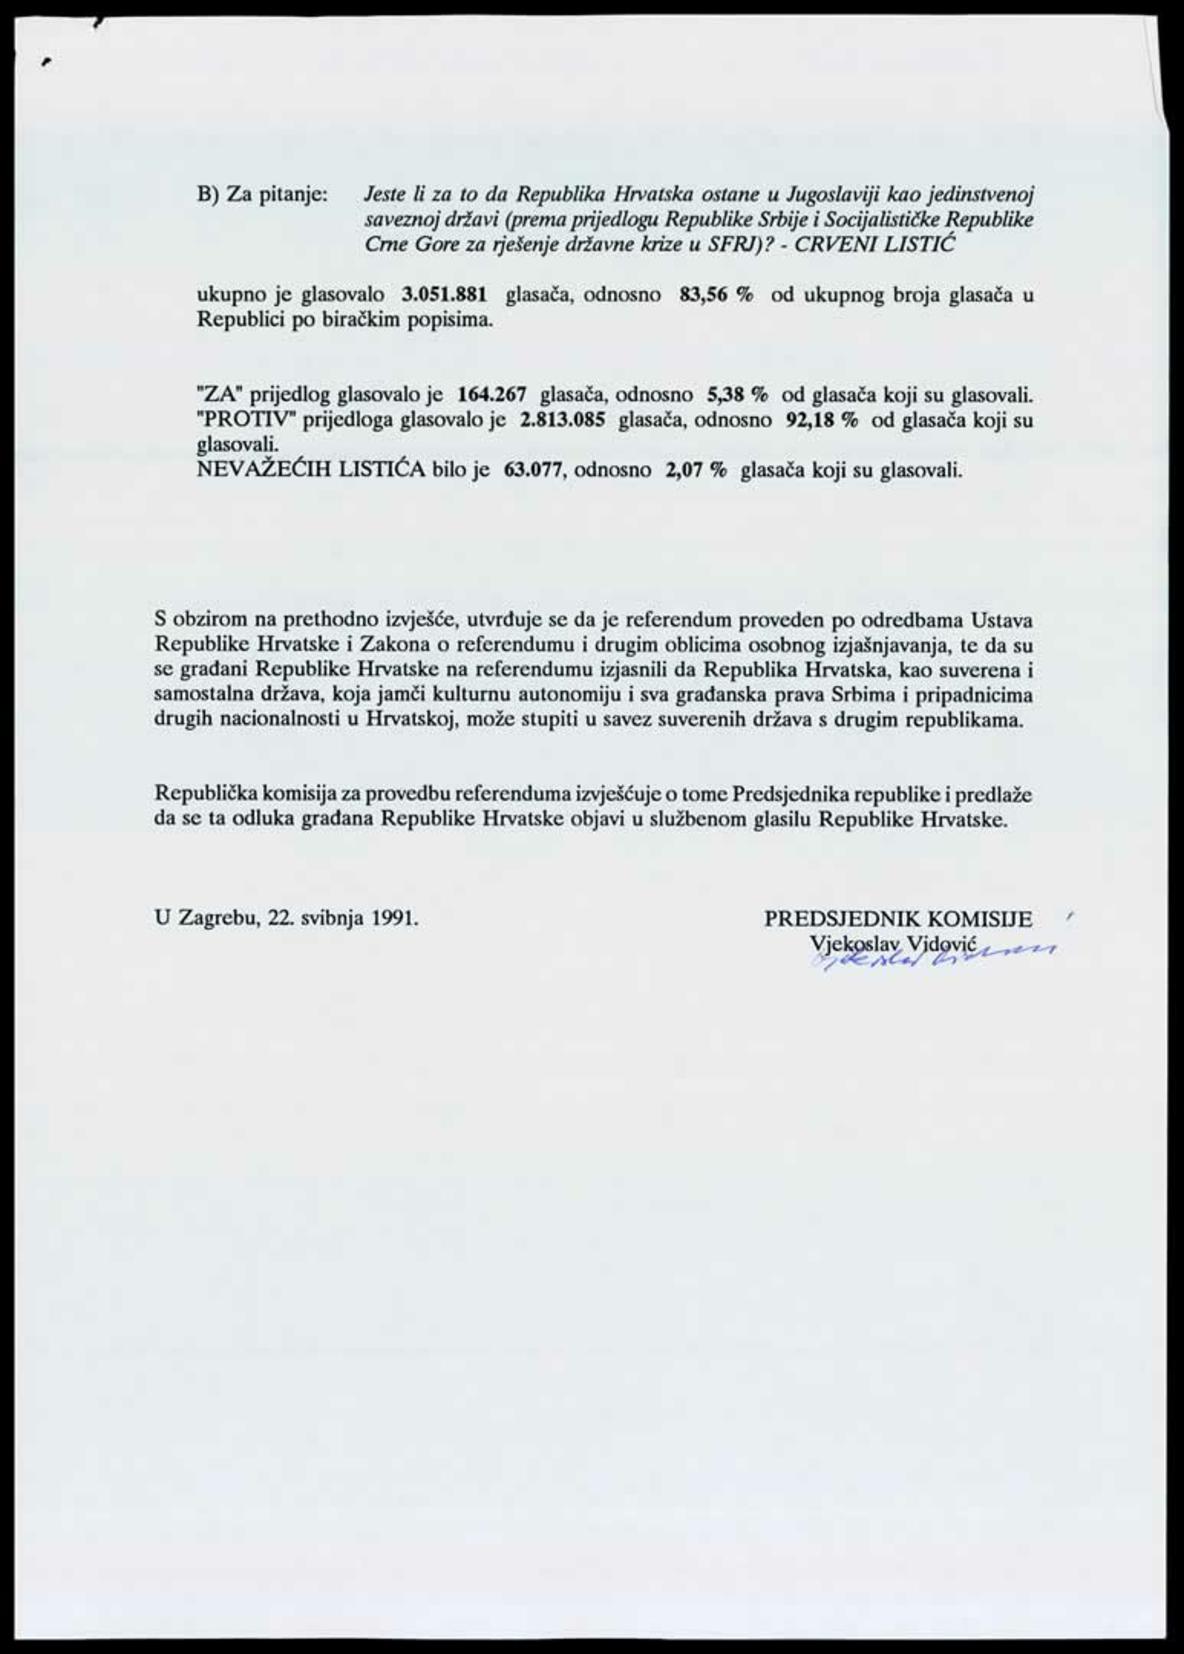 <b>Izvješće o provedenom referendumu</b>, 22. svibnja 1991.<br><br>
HR-HDA-1741. Ured predsjednika RH Franje Tuđmana. Pismohrana, fasc. 186
